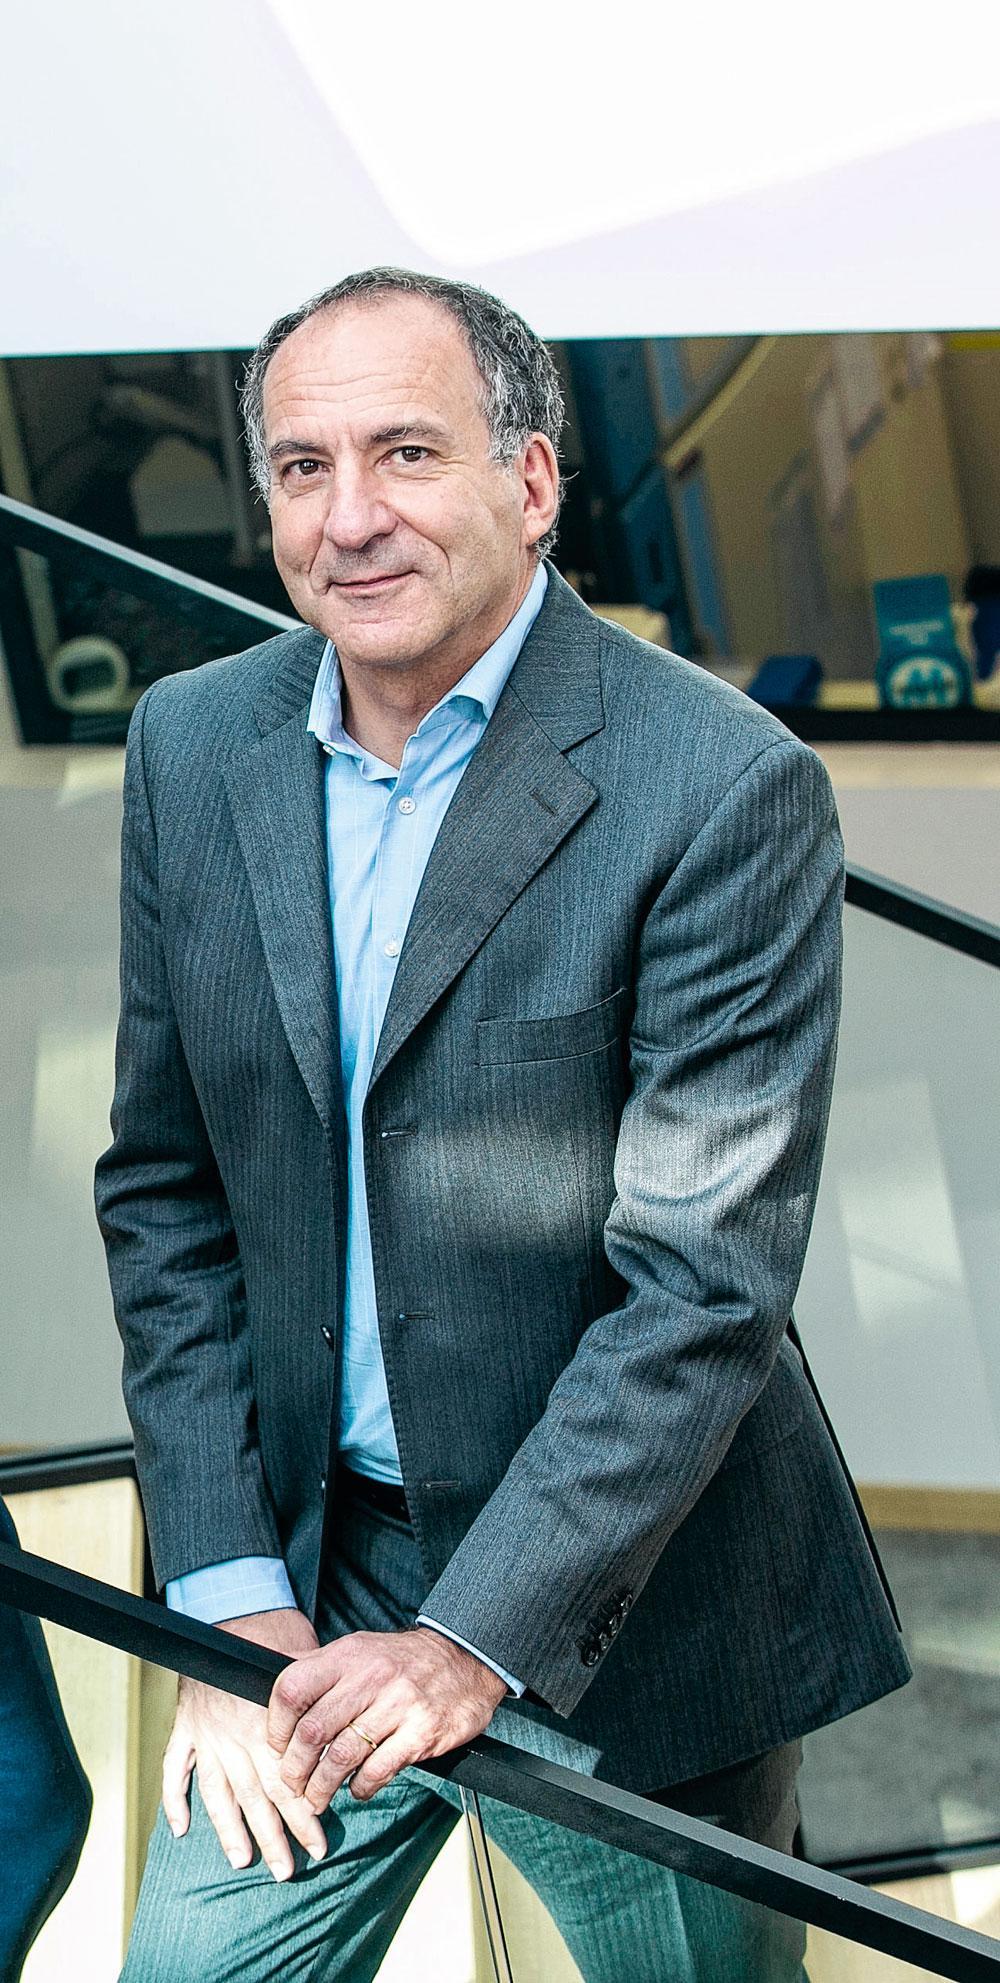 Christian Homsy, fondateur et CEO de Celyad, biotech active dans la lutte contre le cancer.